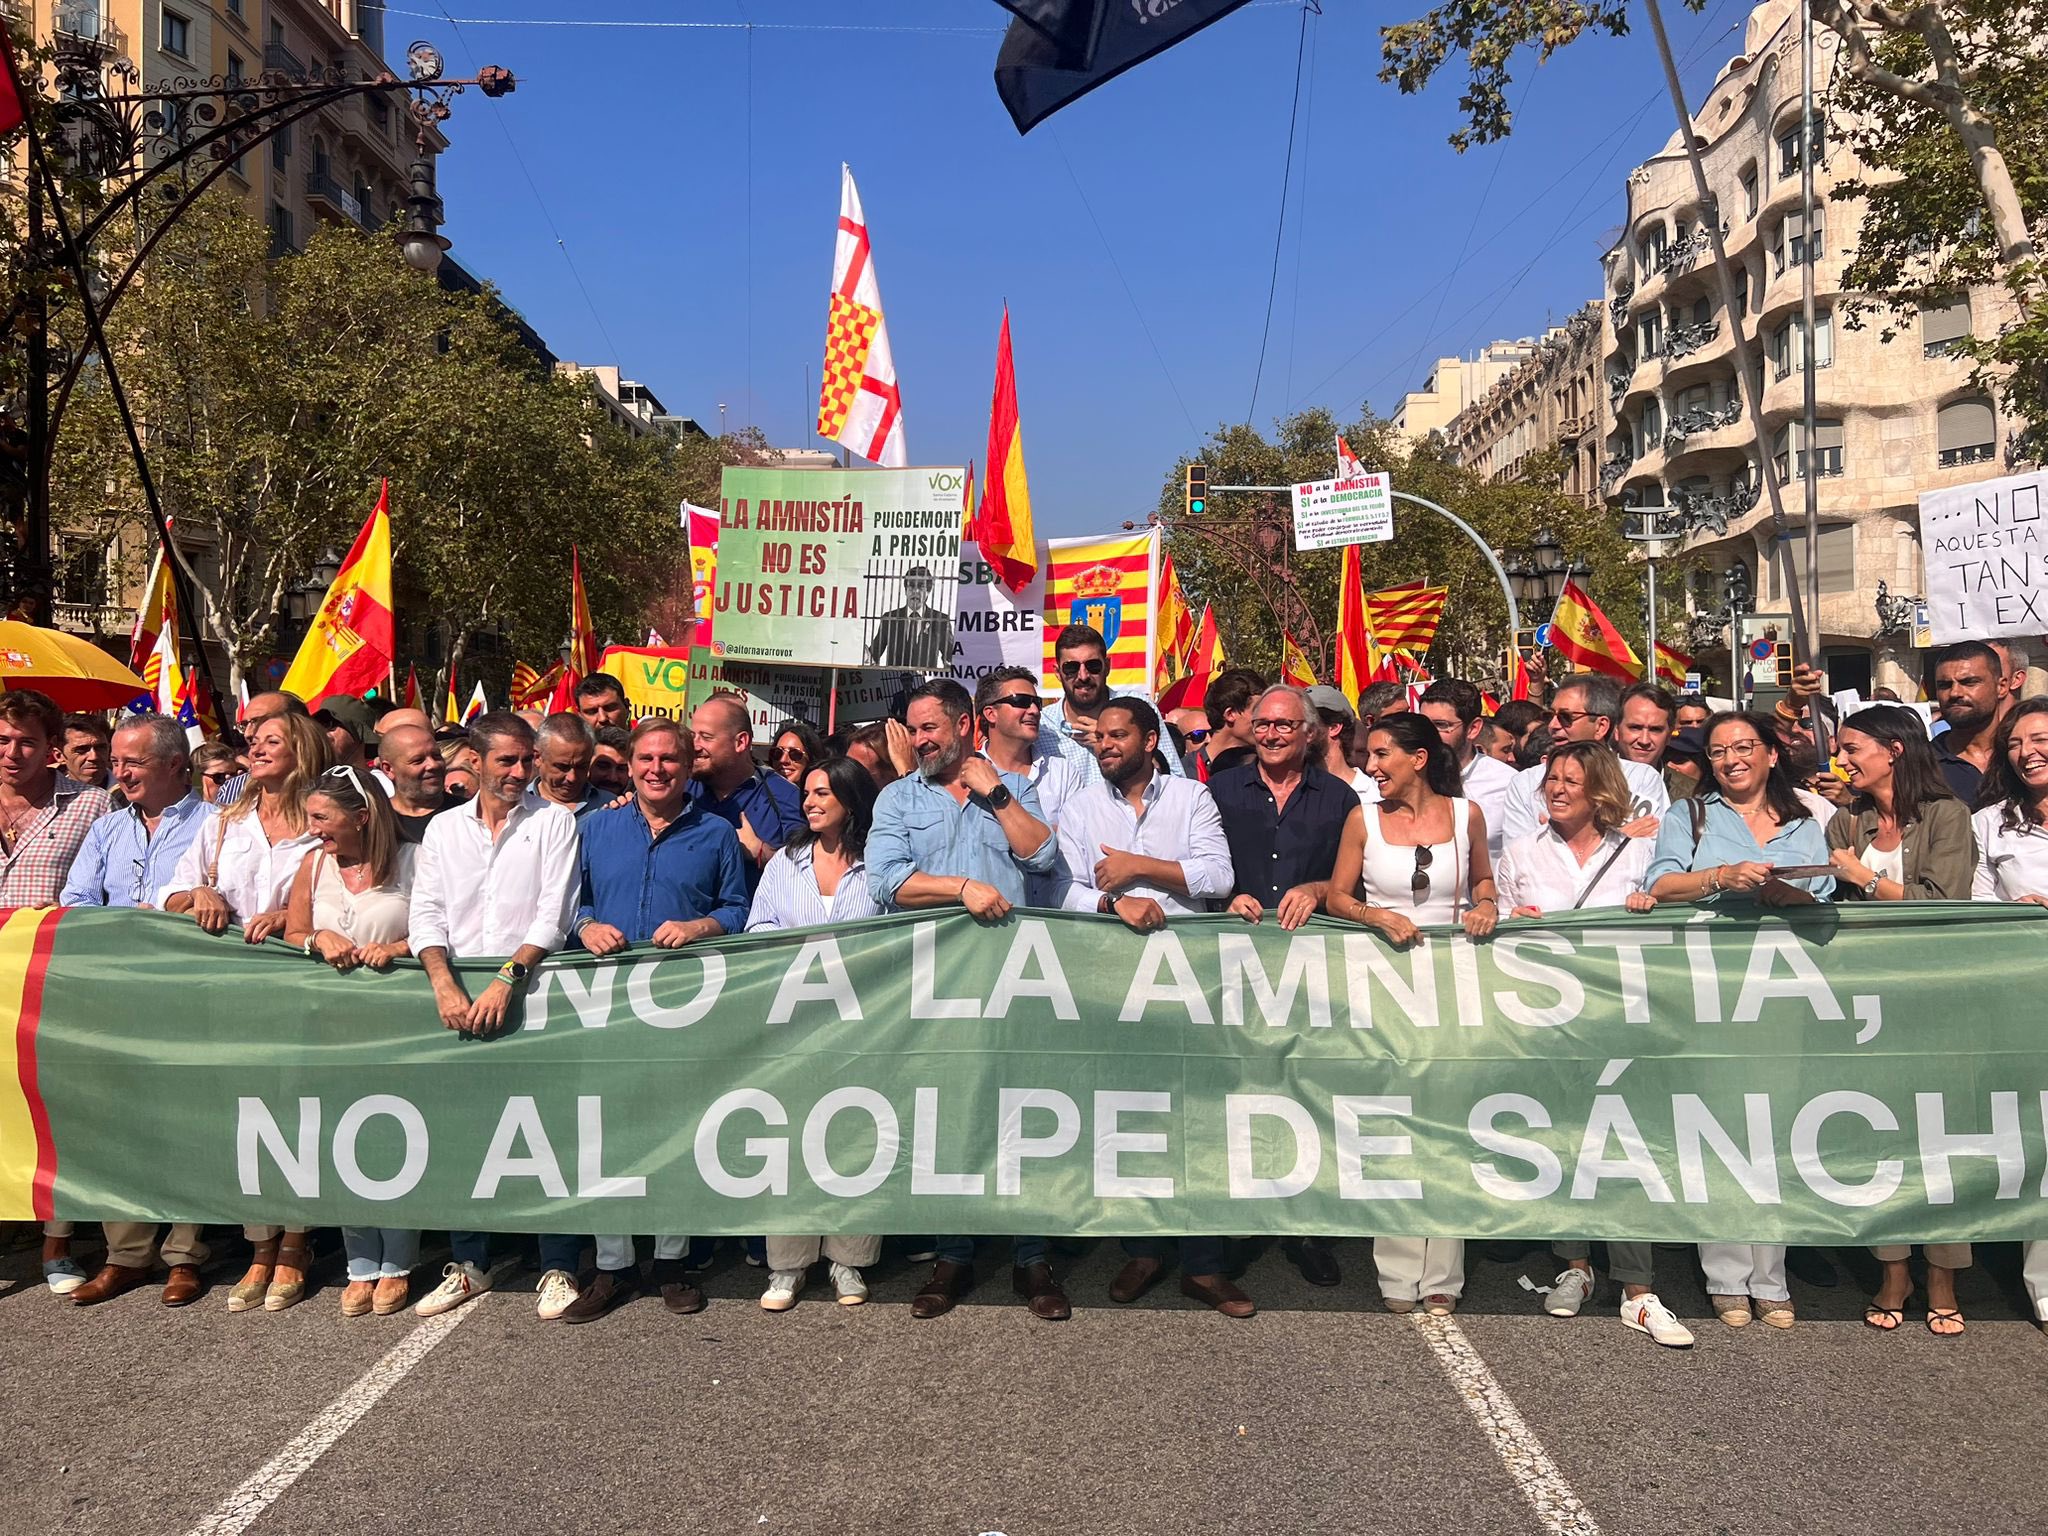 Barcelona - Sociedad Civil Catalana convoca una manifestación contra la amnistía en Barcelona+HD - Página 5 F76TMUoXMAA52WK?format=jpg&name=large